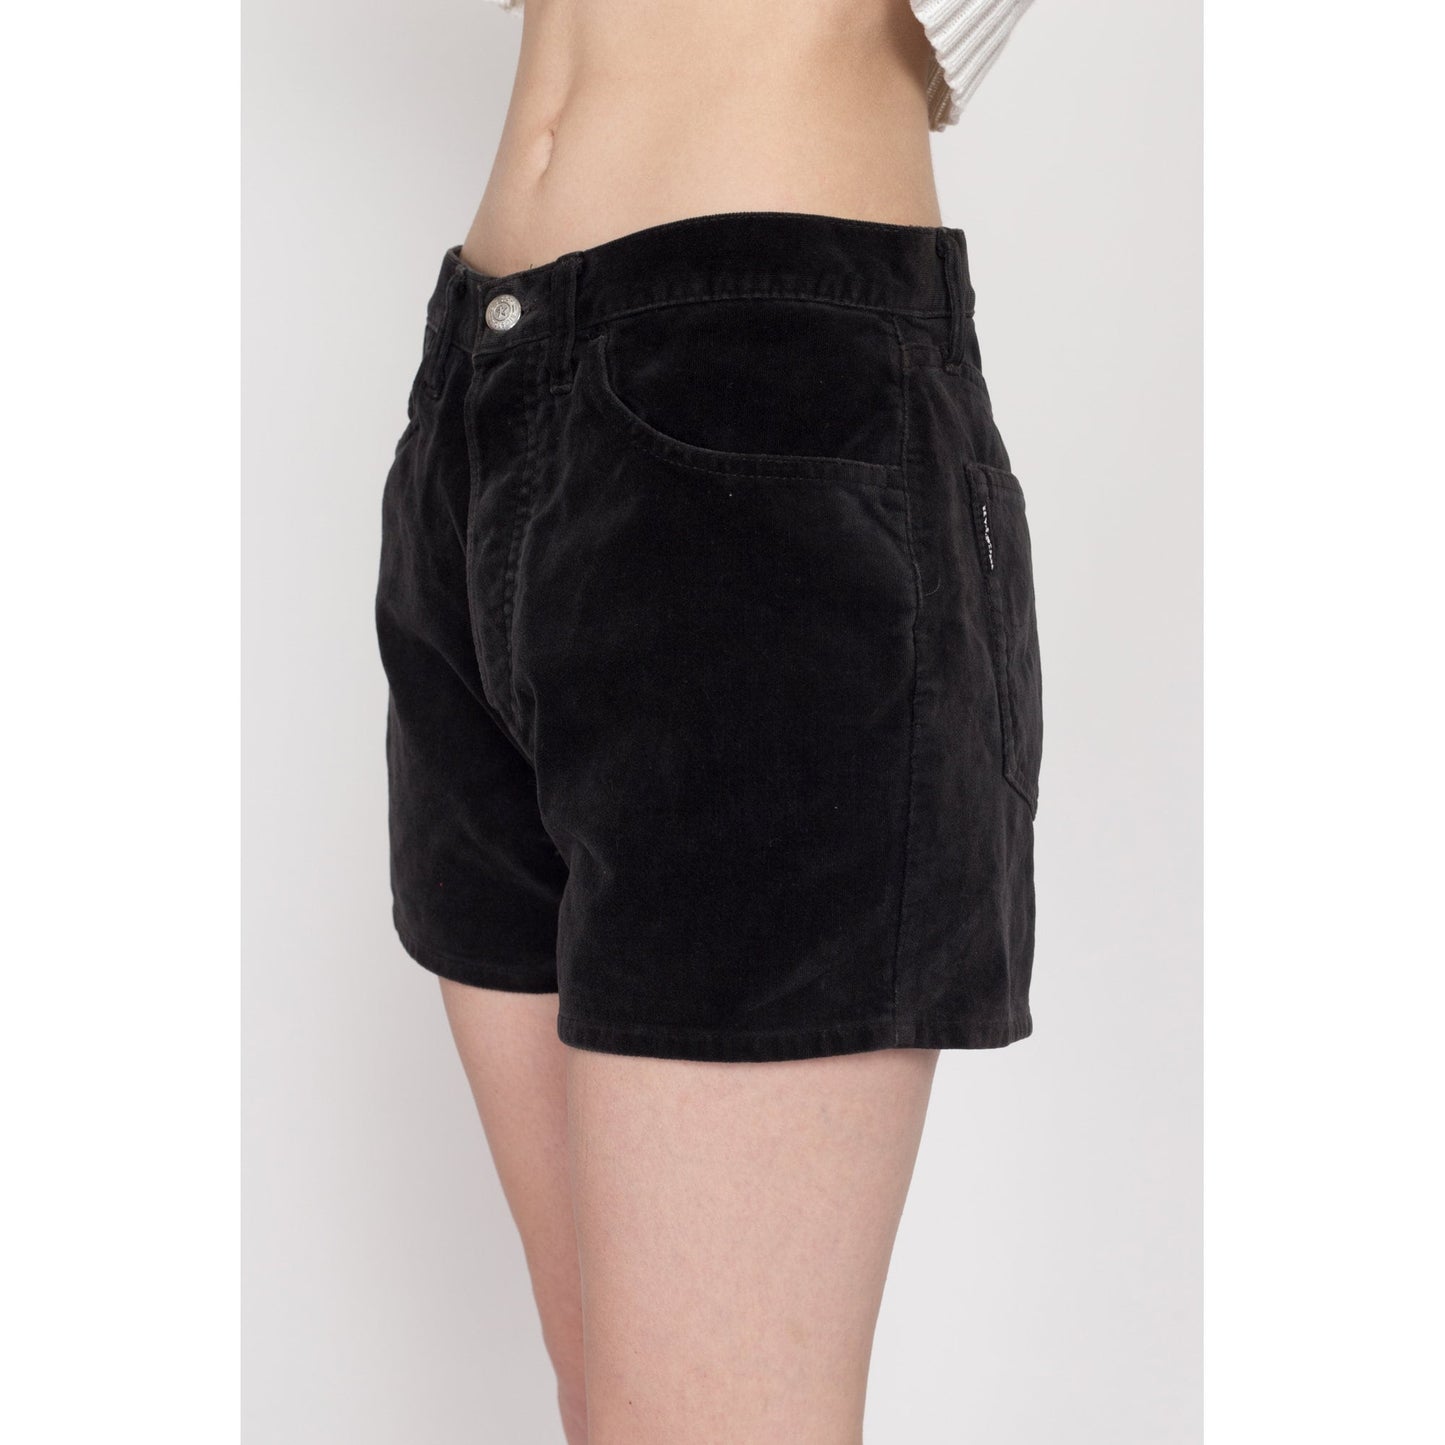 Medium 90s Dark Grey Velvet Shorts 30" | Vintage High Waisted Cotton Velveteen Shorts